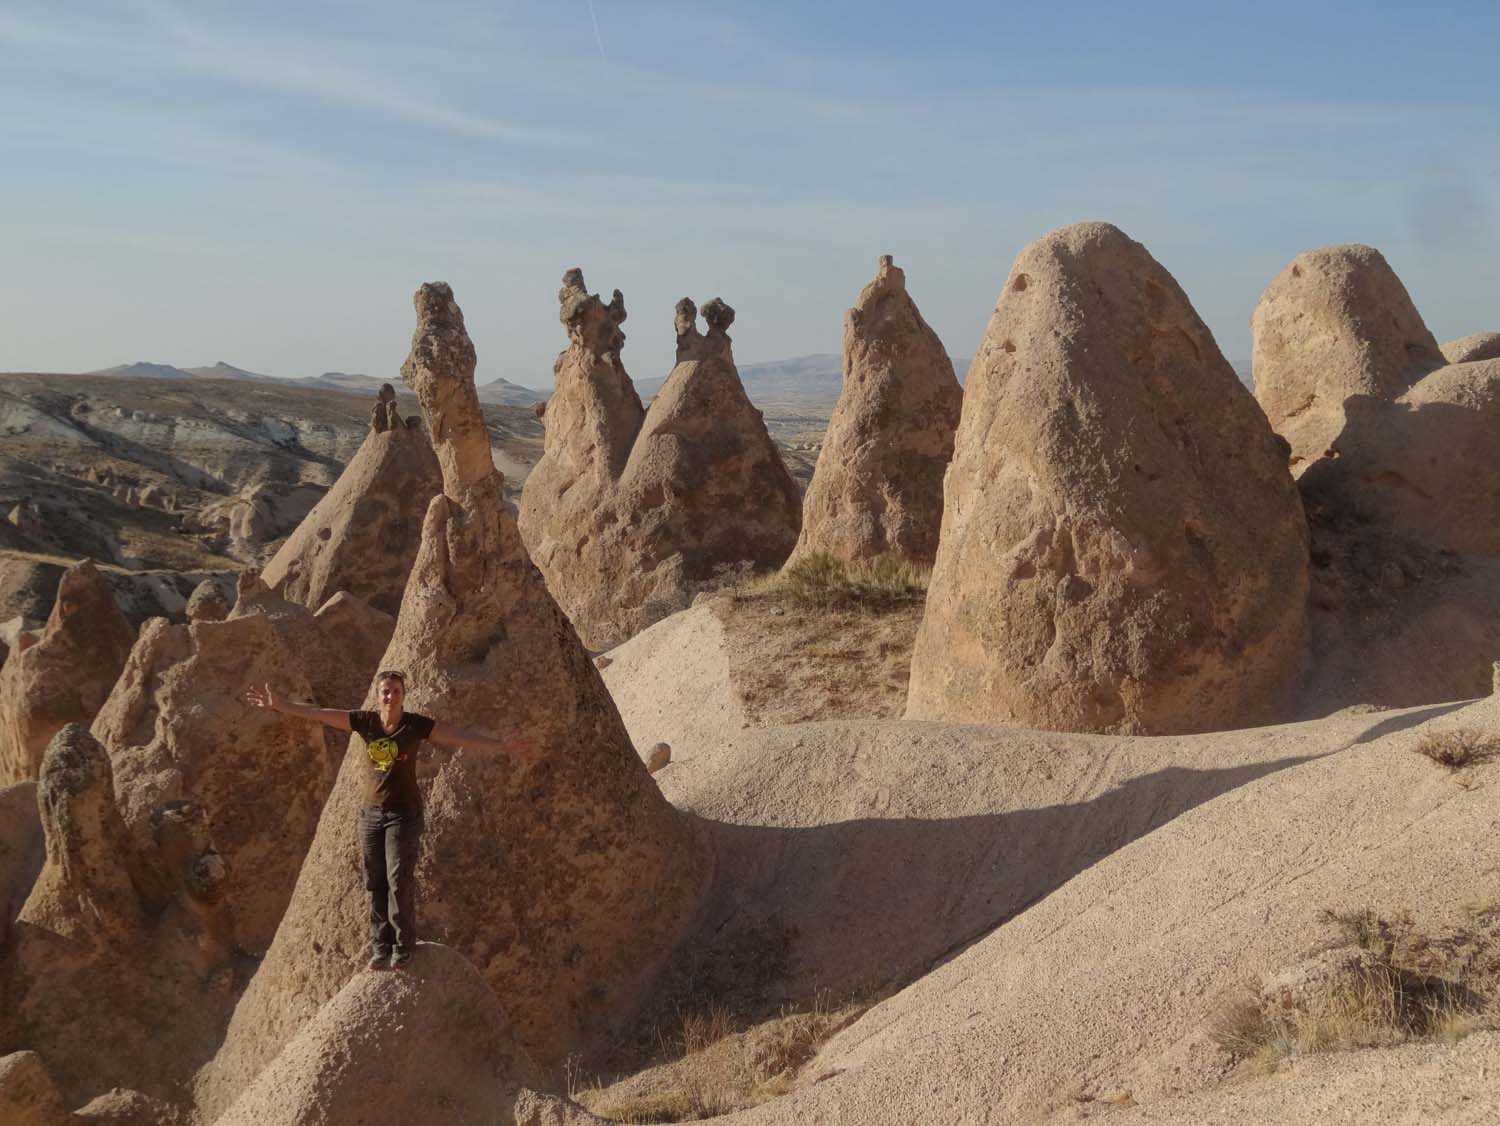 fairy chimneys in Cappadocia